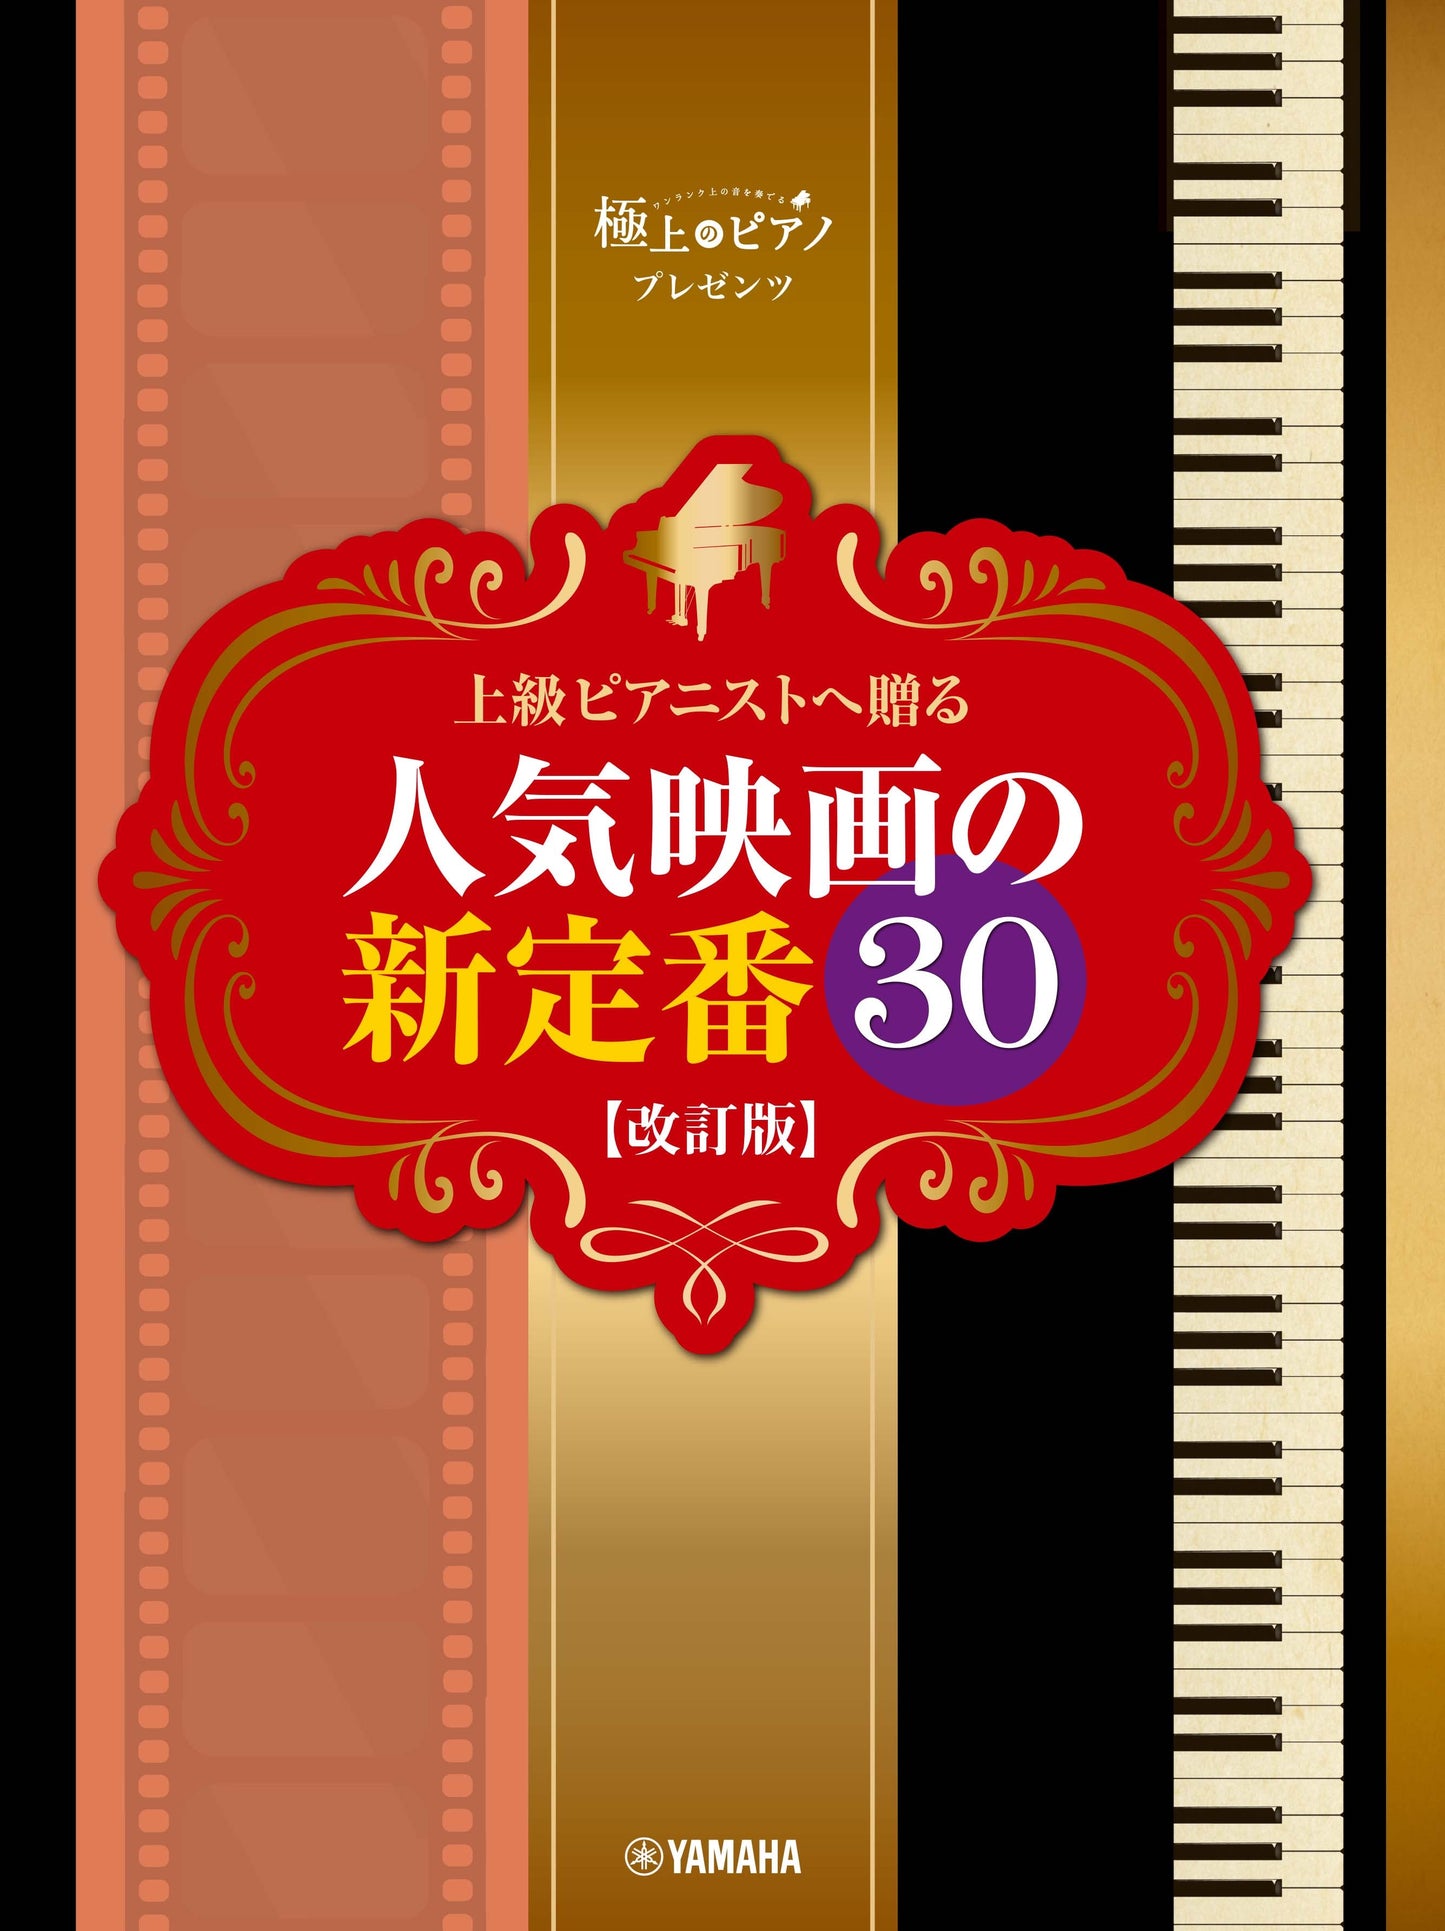 ピアノソロ 極上のピアノプレゼンツ 上級ピアニストへ贈る 人気映画の新定番30 【改訂版】